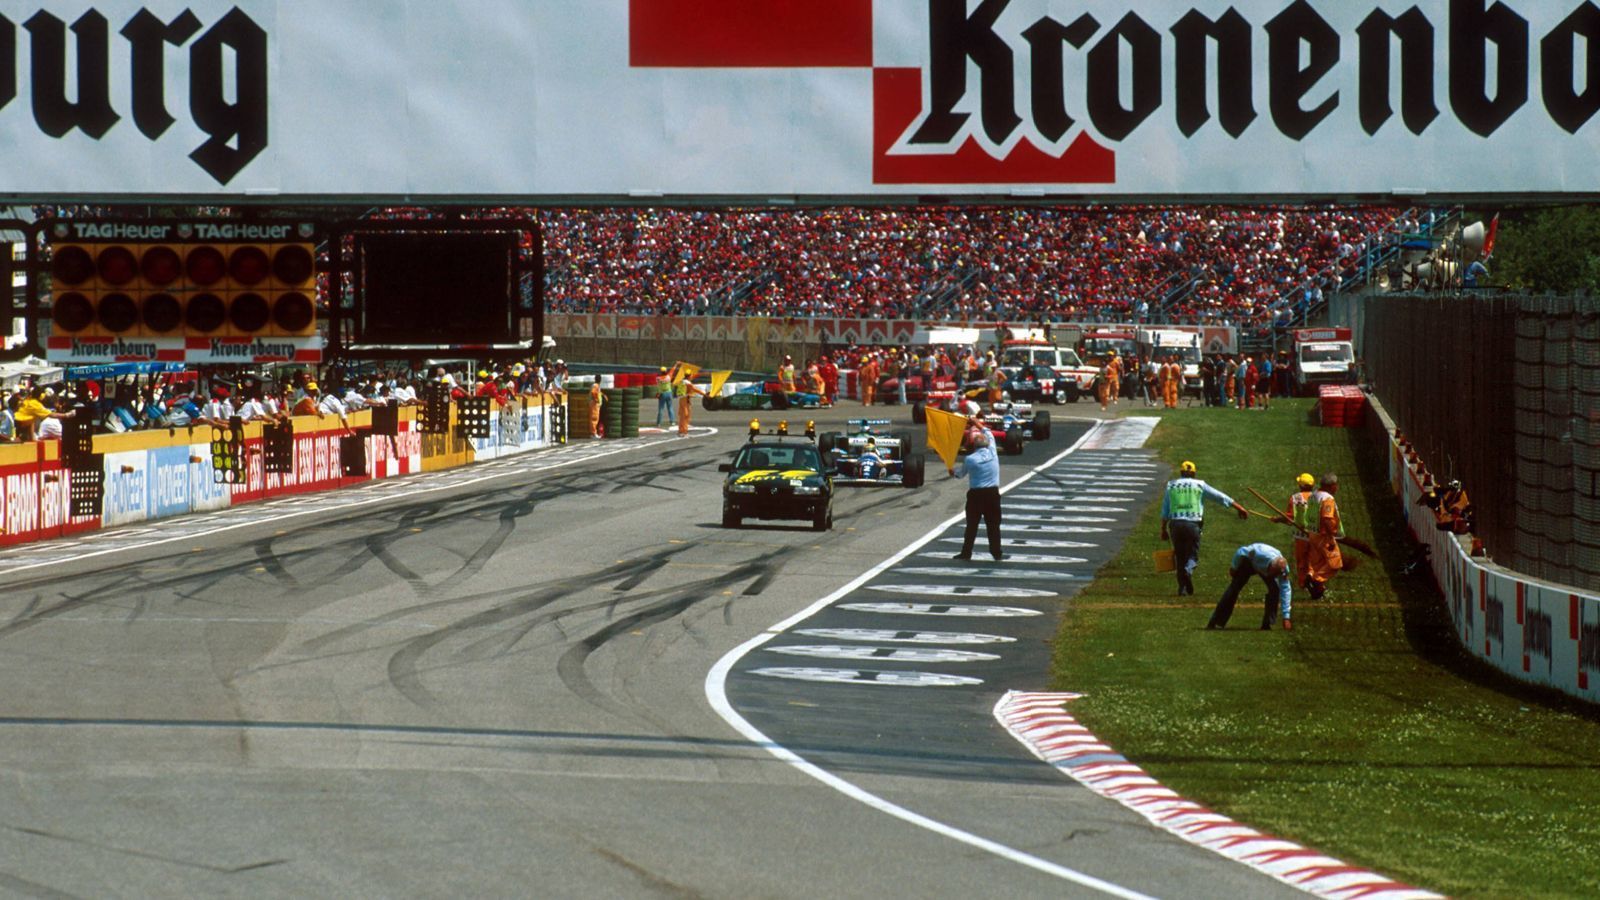 <strong>Ayrton Senna: Als die Formel 1 ihre Seele verlor</strong><br>
                Als ob es noch einen Warnschuss braucht, rast der Portugiese Pedro Lamy beim Start des Rennens im Lotus in den stehengebliebenen Benetton des Finnen J.J. Lehto. Umherfliegende Fahrzeugteile verletzen Zuschauer.
